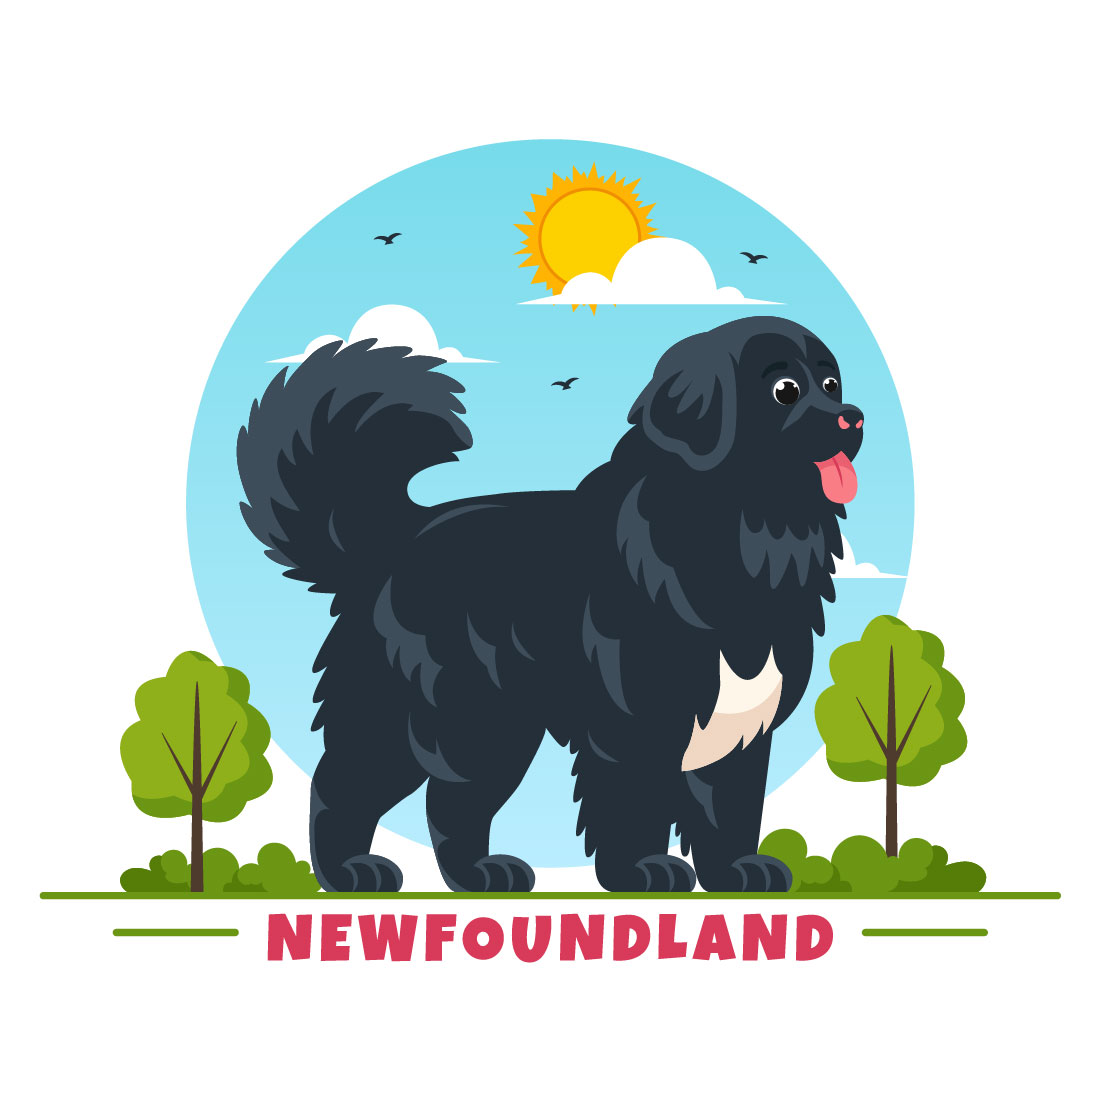 10 Newfoundland Dog Illustration preview image.